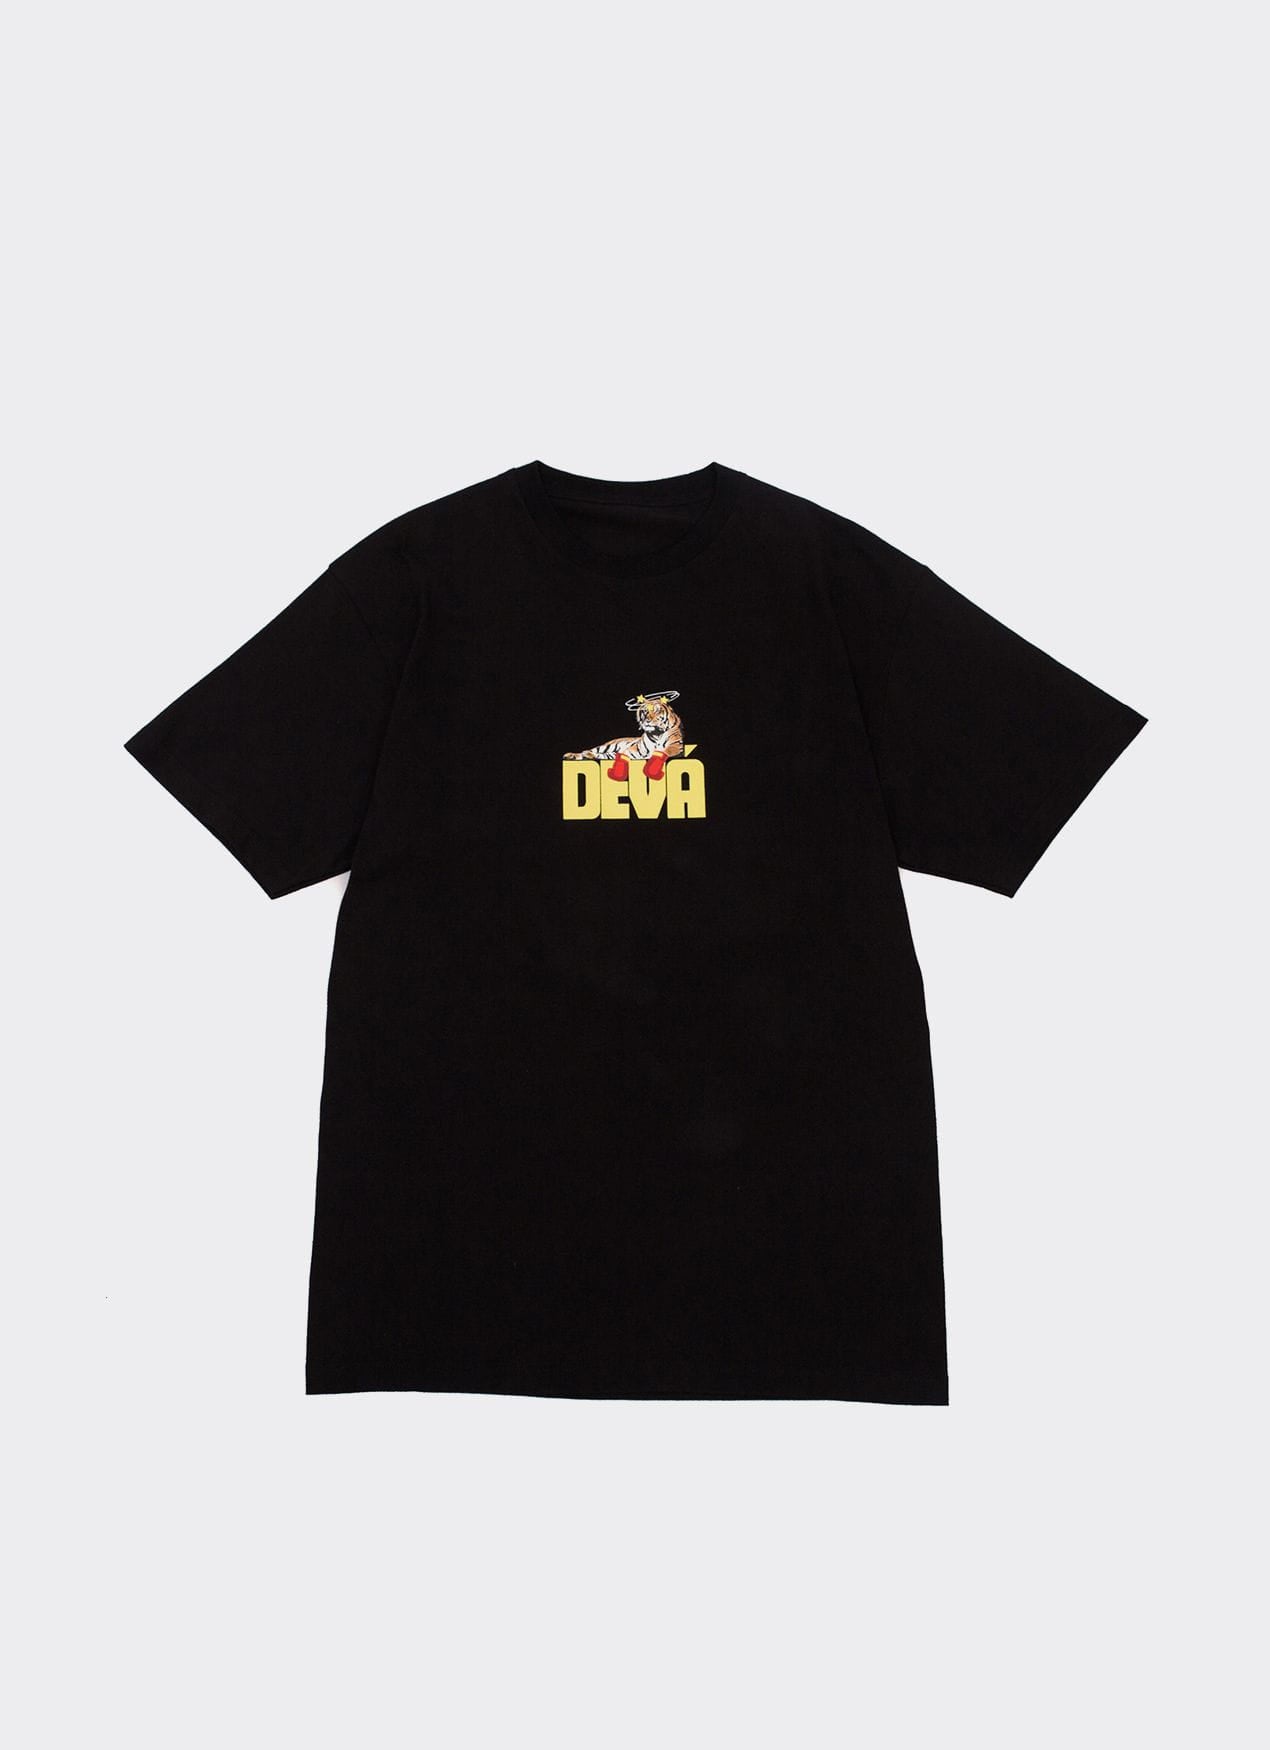 Deva States T-Shirt